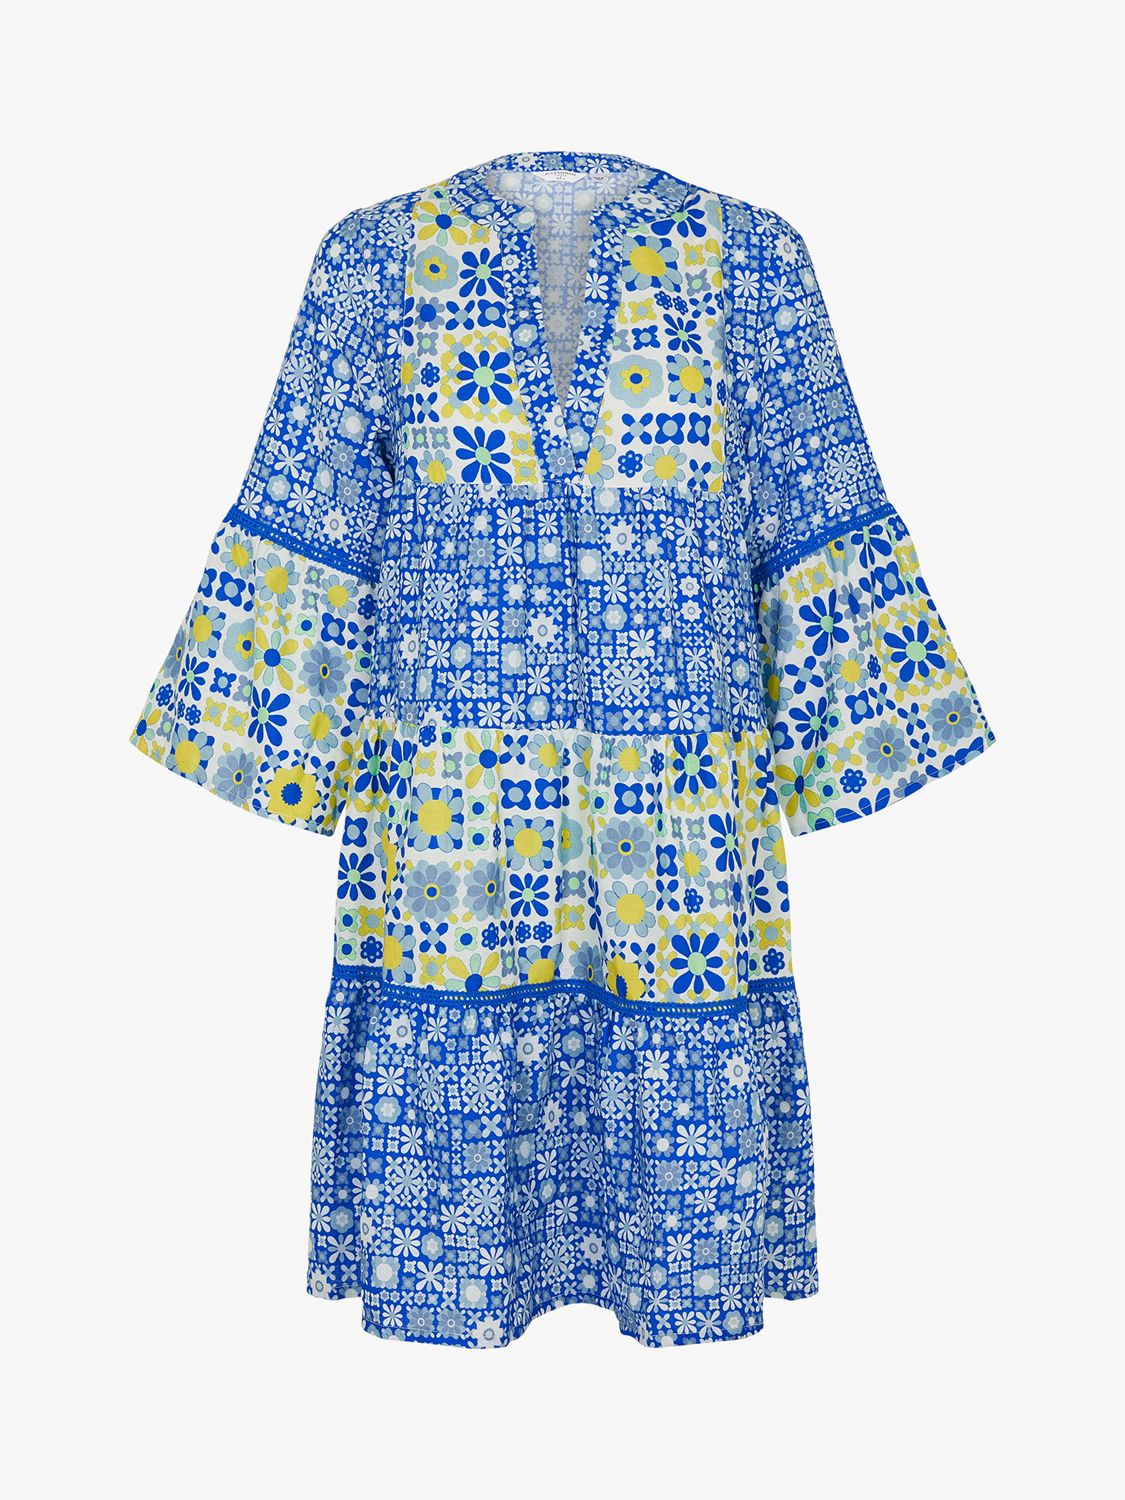 Accessorize Retro Tile Print Mini Dress, Blue/Multi at John Lewis ...